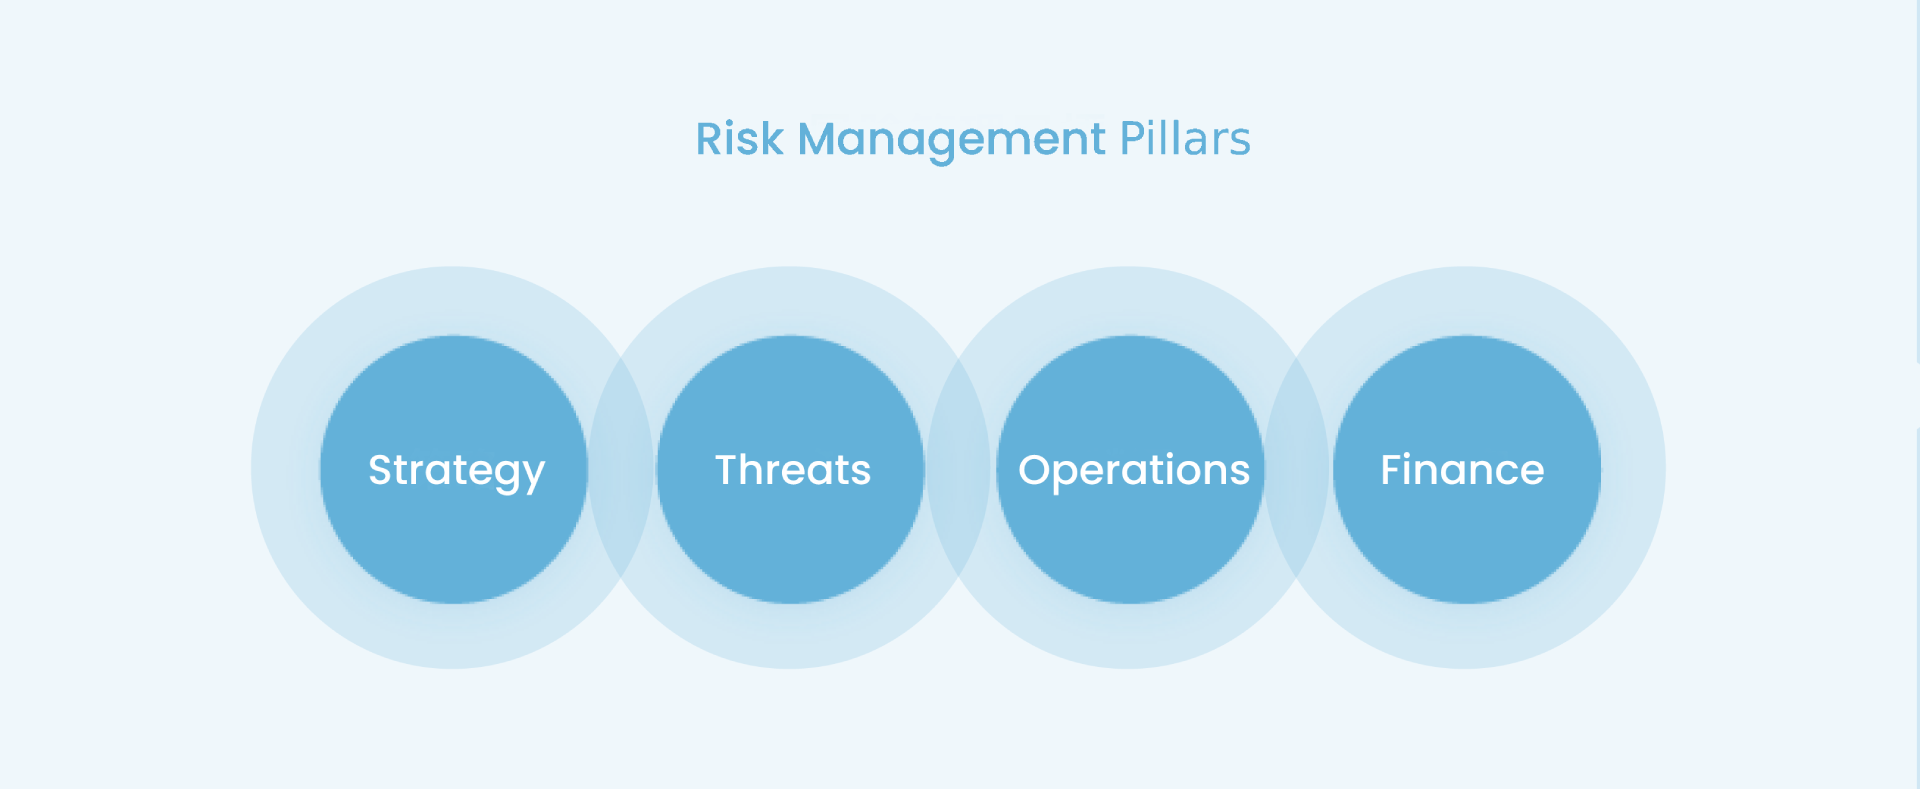 Risk Management1